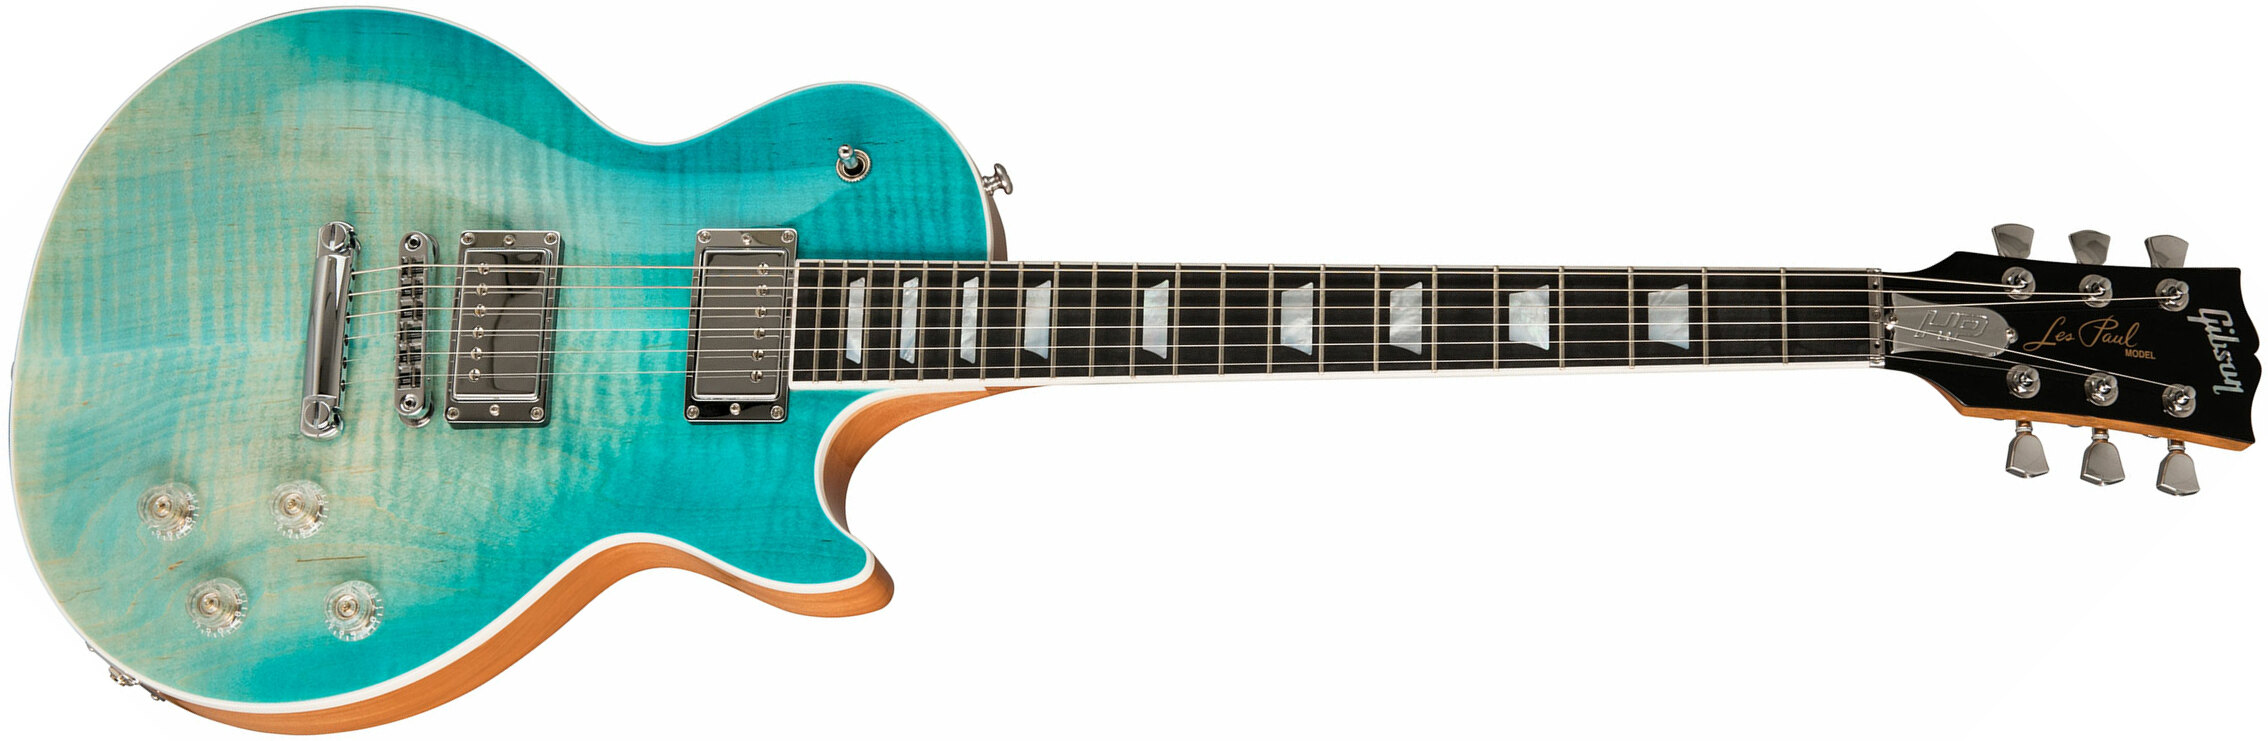 Gibson Les Paul Hp-ii High Performance 2019 Hh Ht Rw - Seafoam Fade - Guitarra eléctrica de corte único. - Main picture